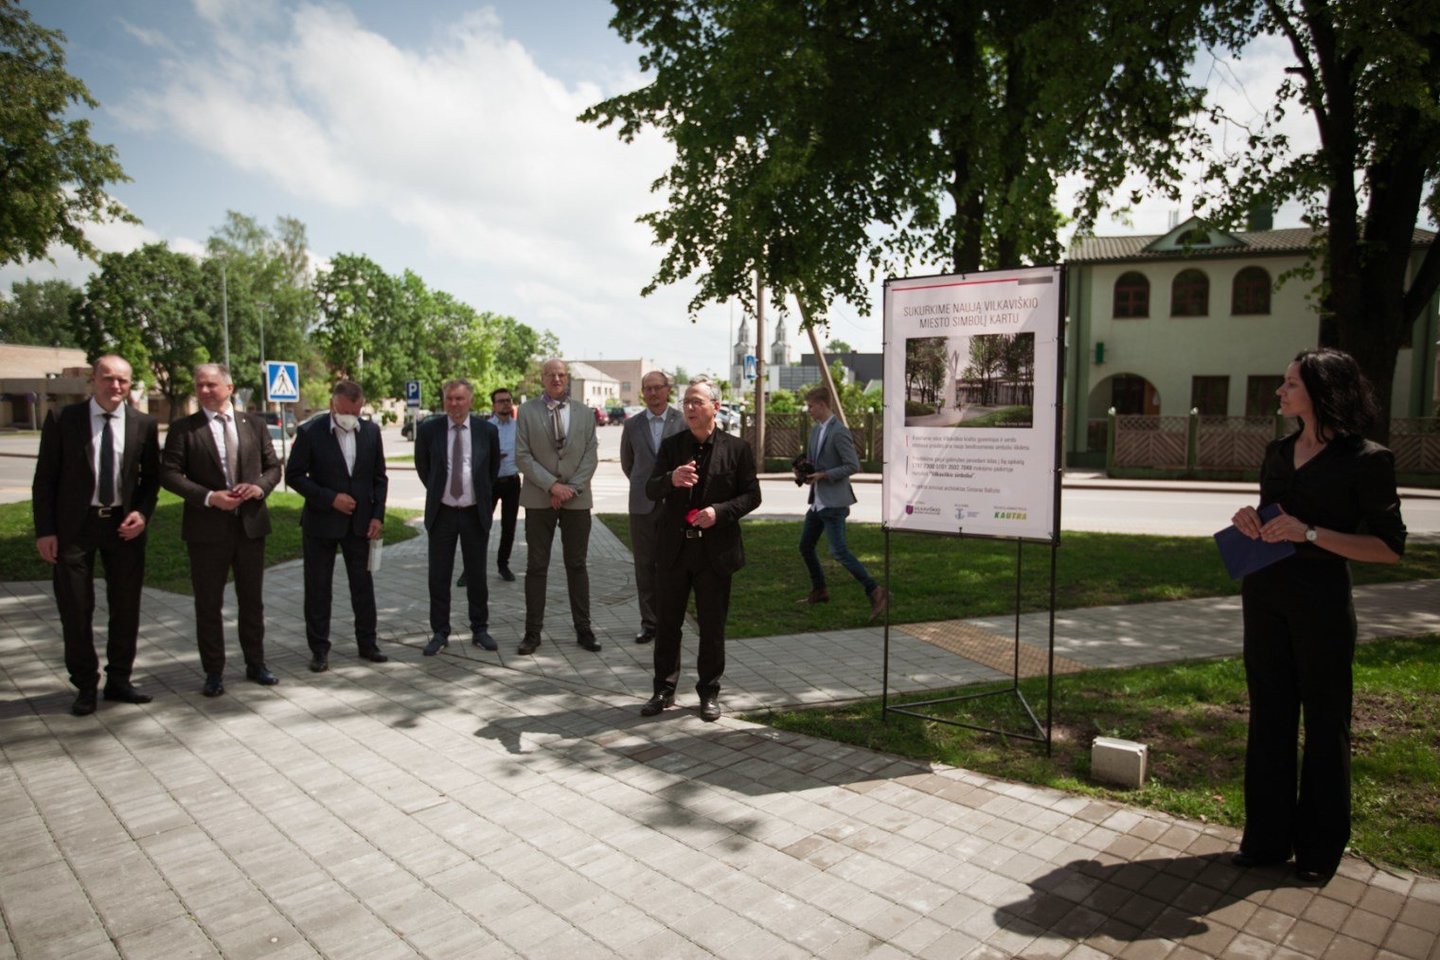 Birželio 11 dieną Vilkaviškio autobusų stotis sulaukė daugiau nei įprastai lankytojų.